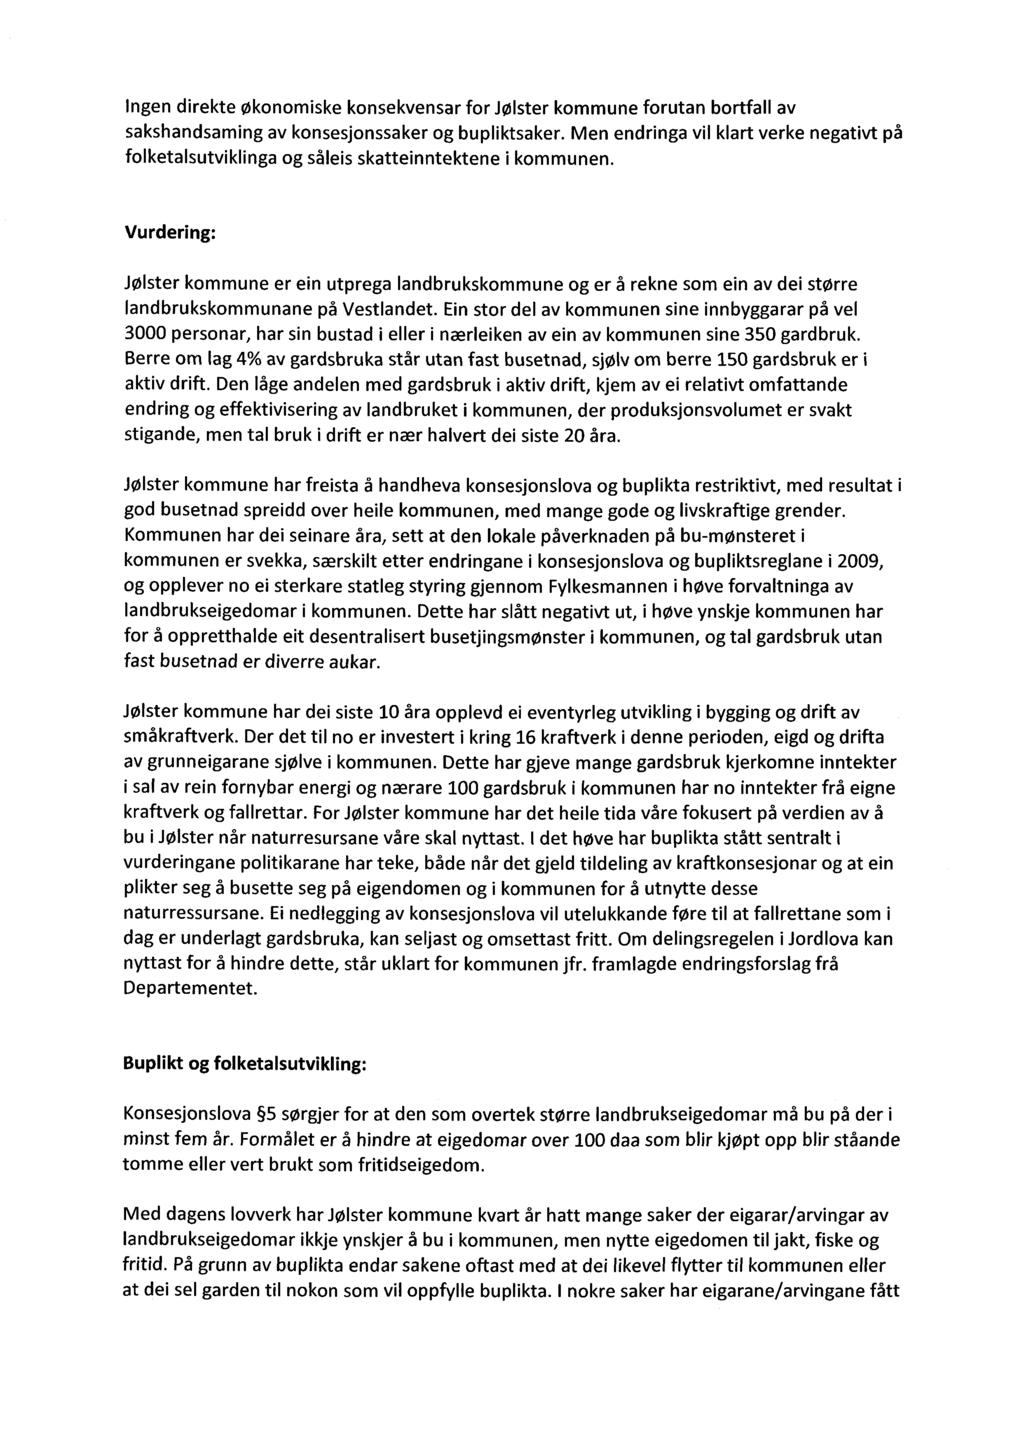 Ingen direkte økonomiske konsekvensar for Jølster kommune forutan bortfall av sakshandsaming av konsesjonssaker og bupliktsaker.